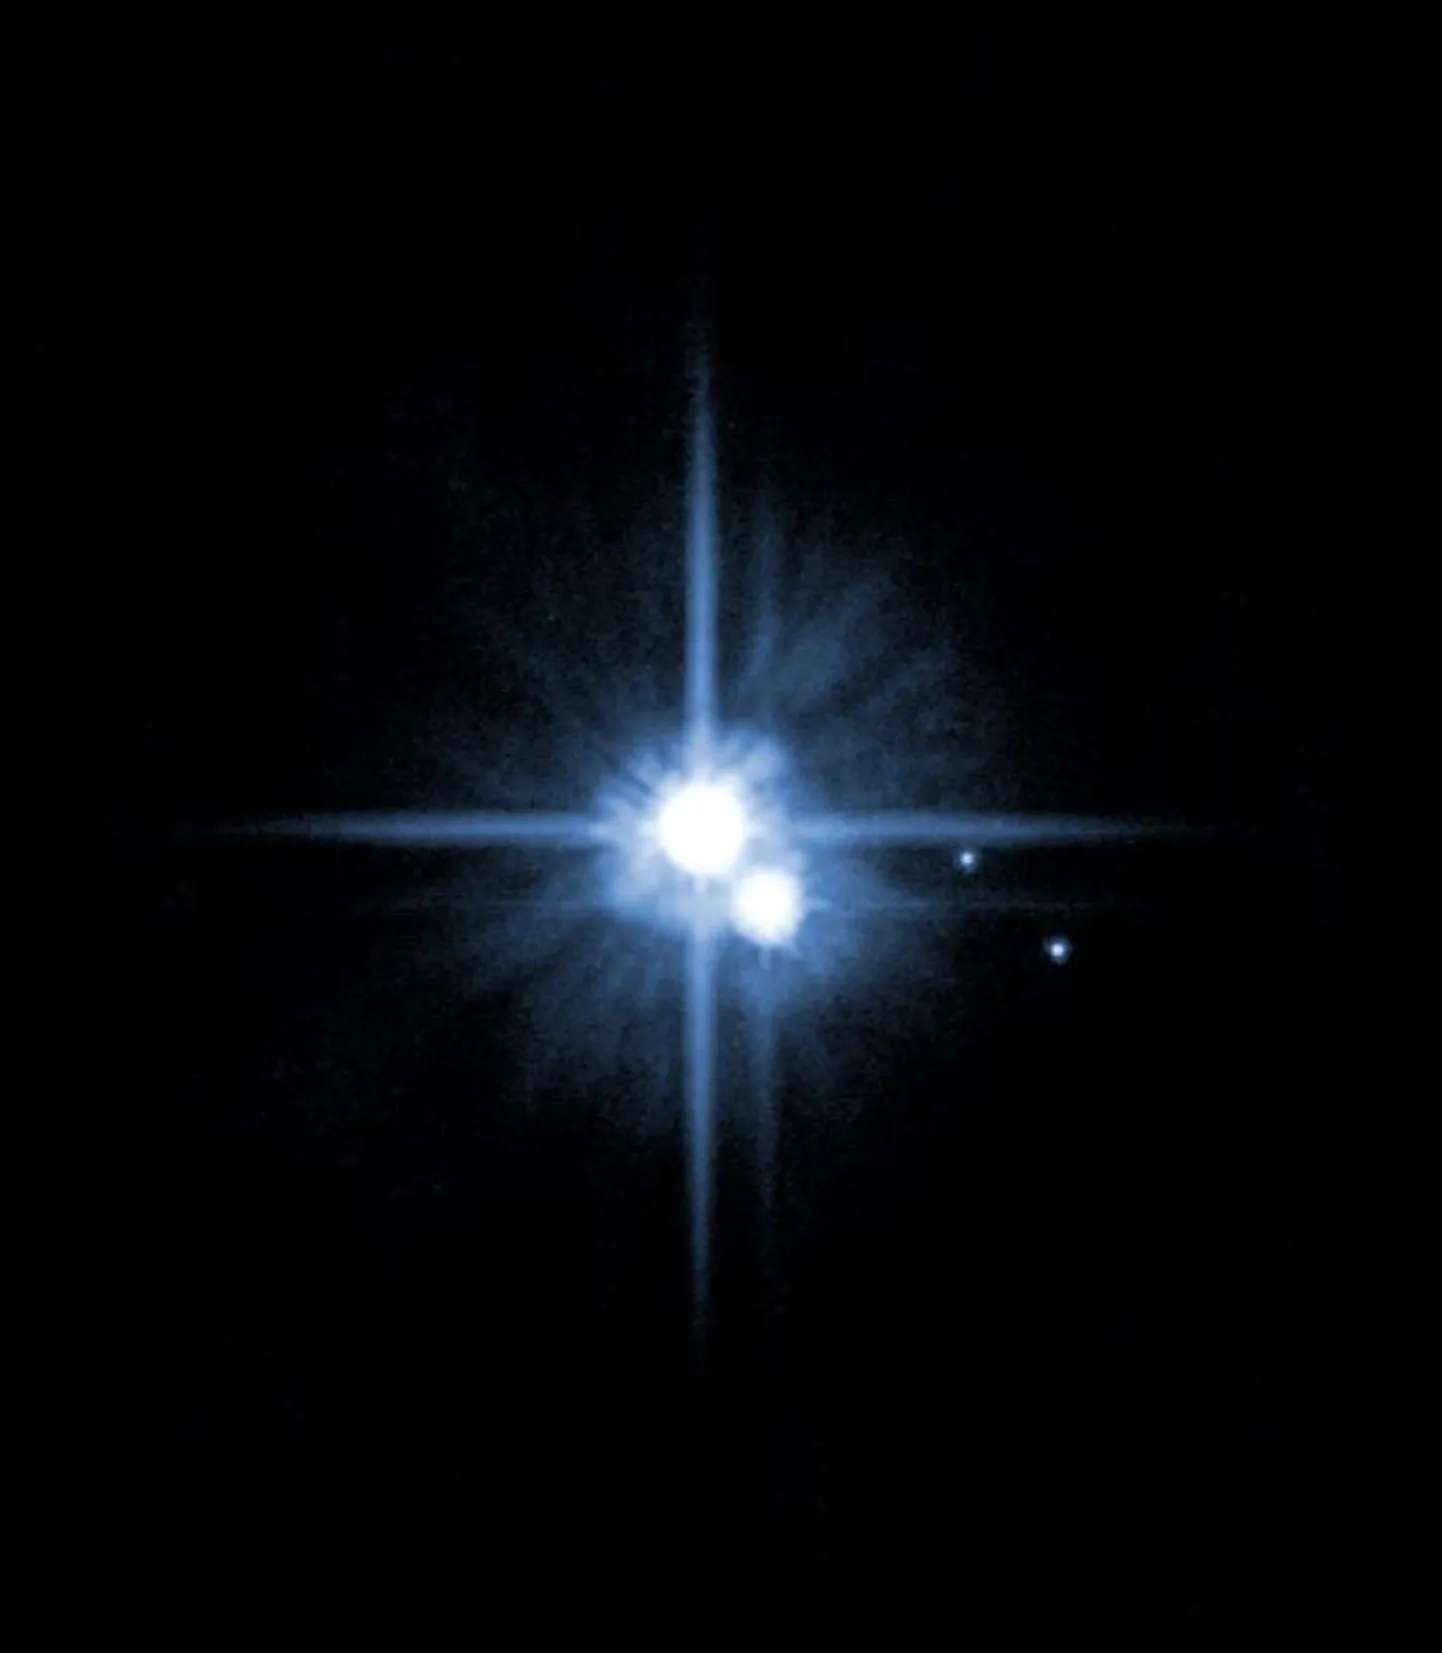 Фотография Плутона, сделанная через телескоп. Иллюстративное фото.